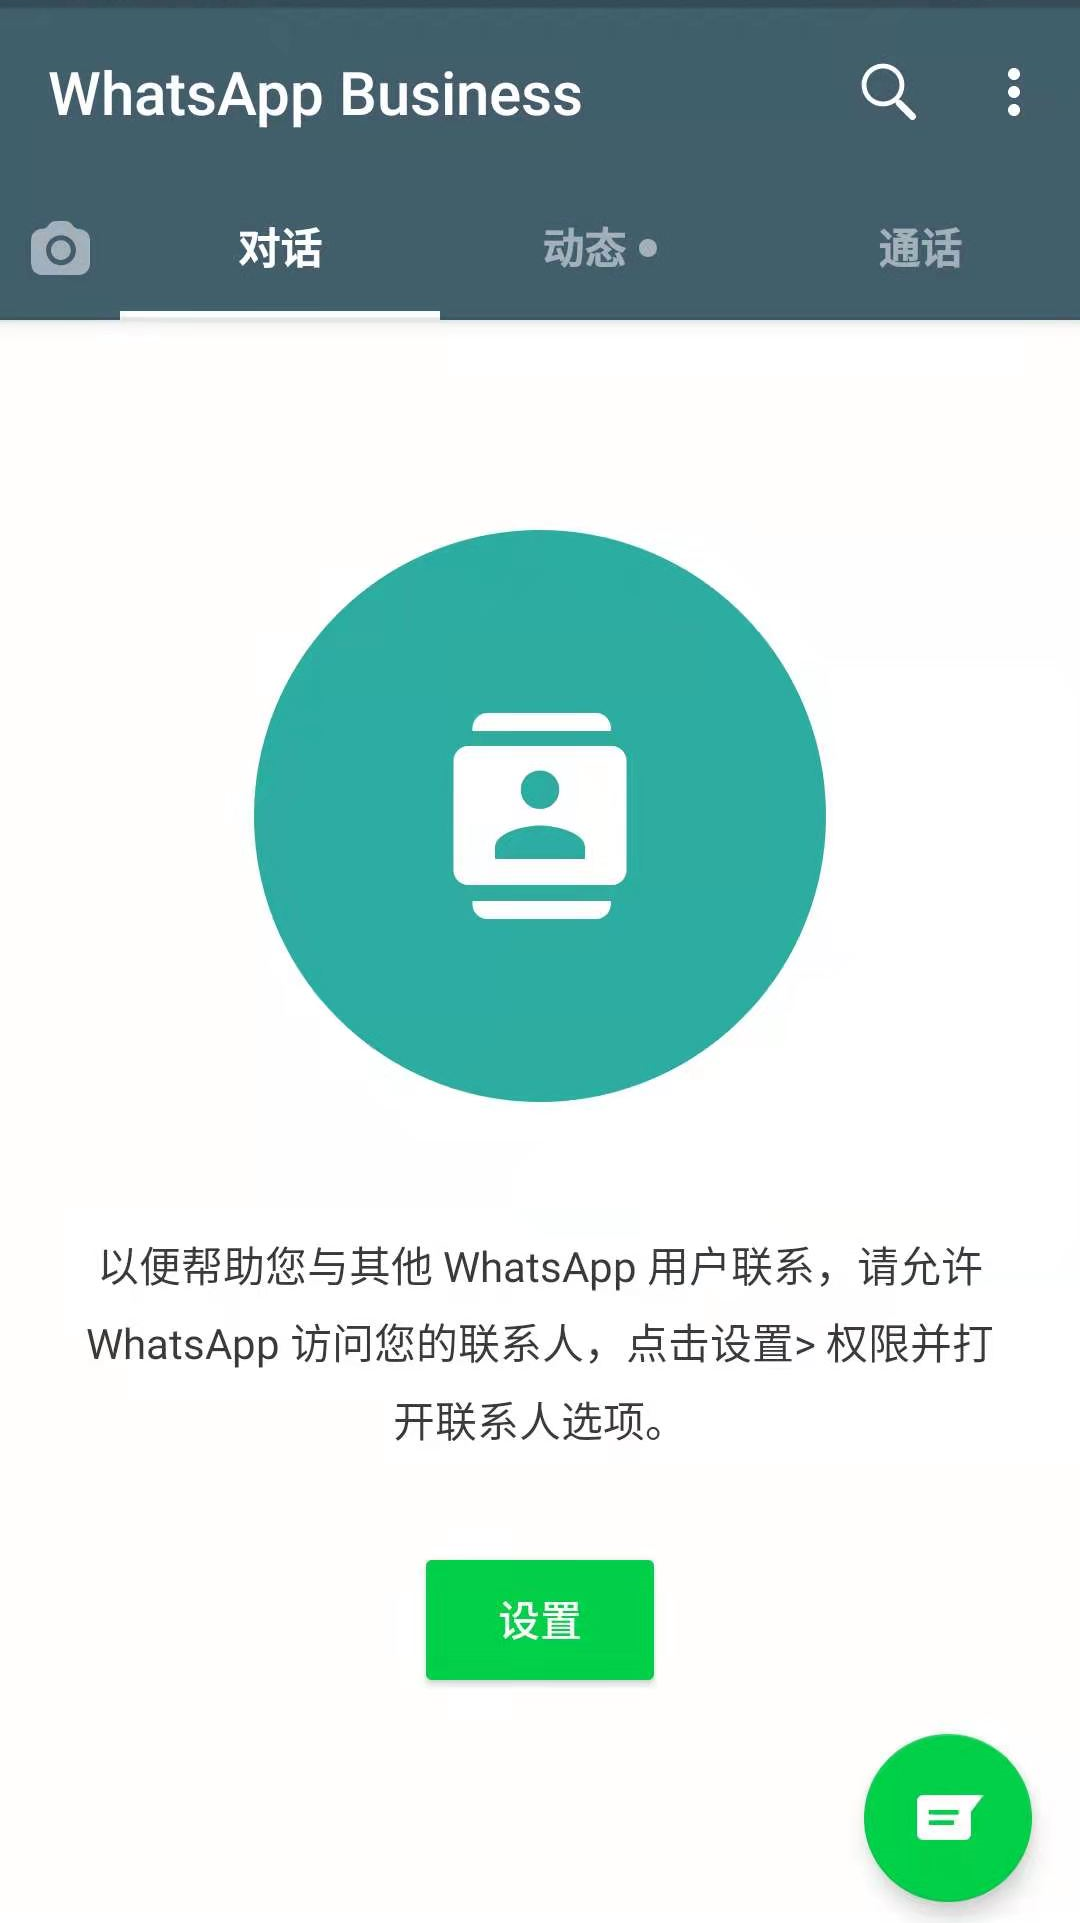 whatsapp官方下载_官方下载微信_官方下载whatsApp